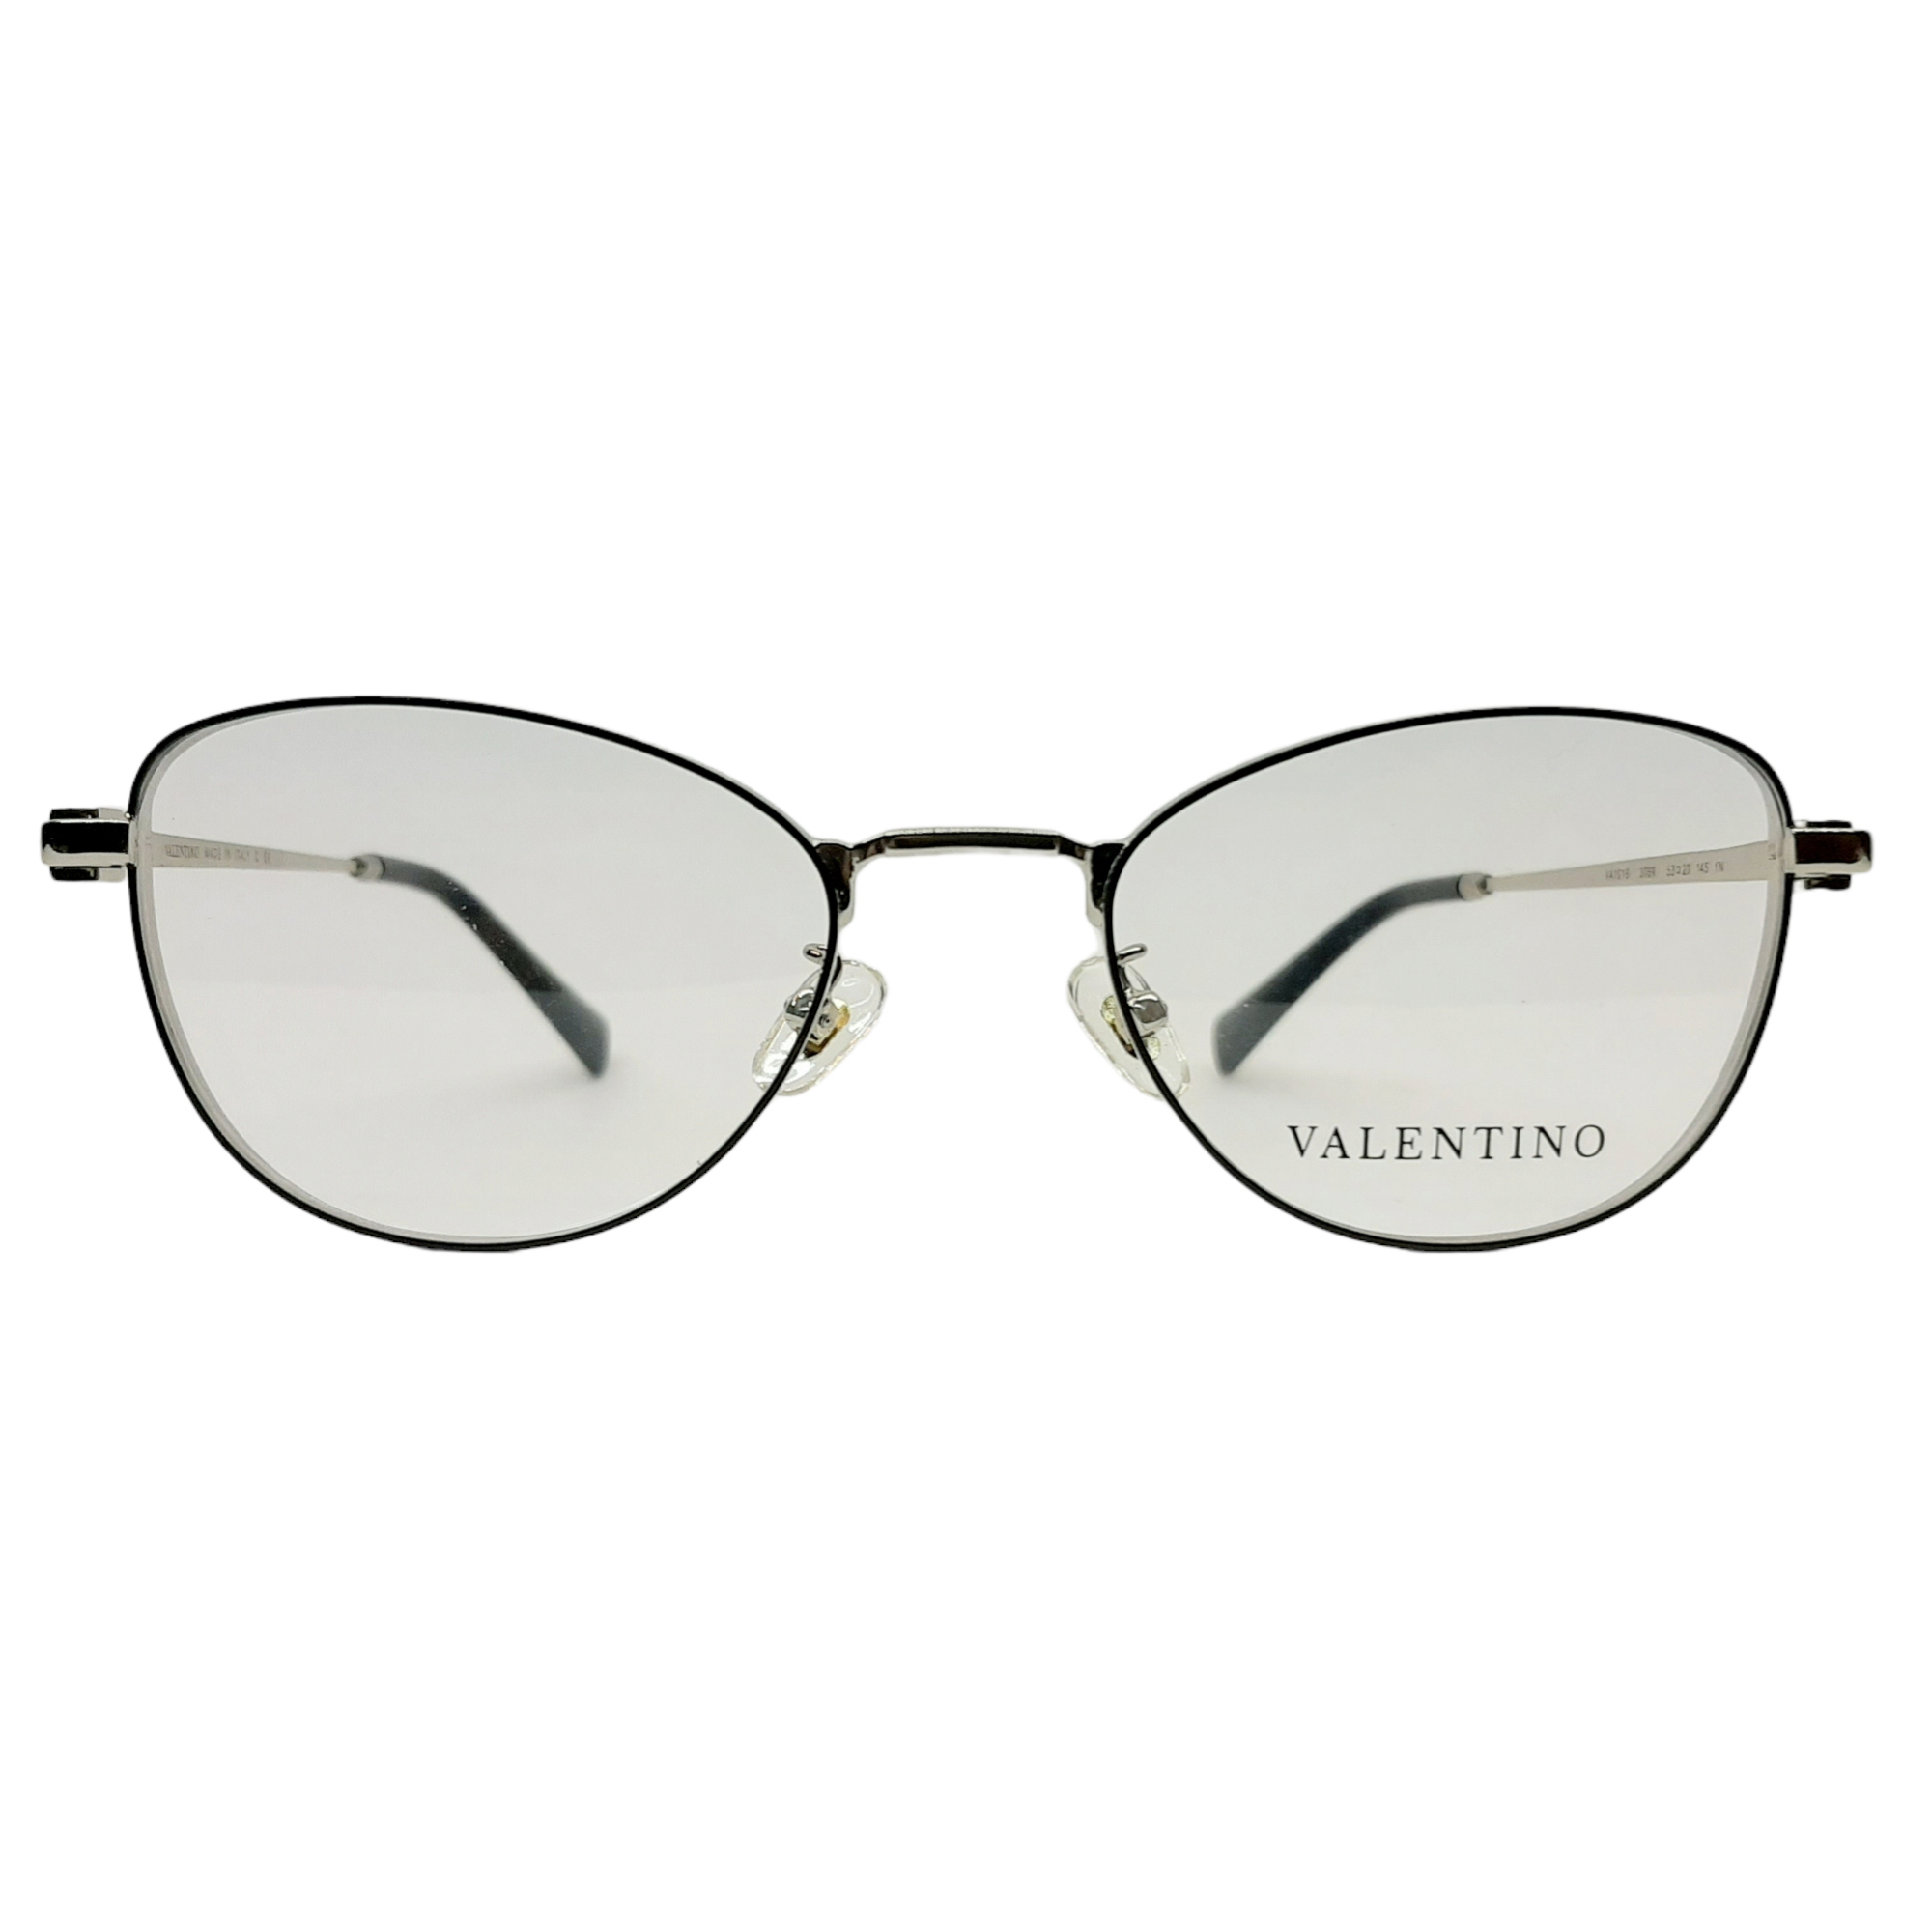 فریم عینک طبی والنتینو مدل VA1016-3069